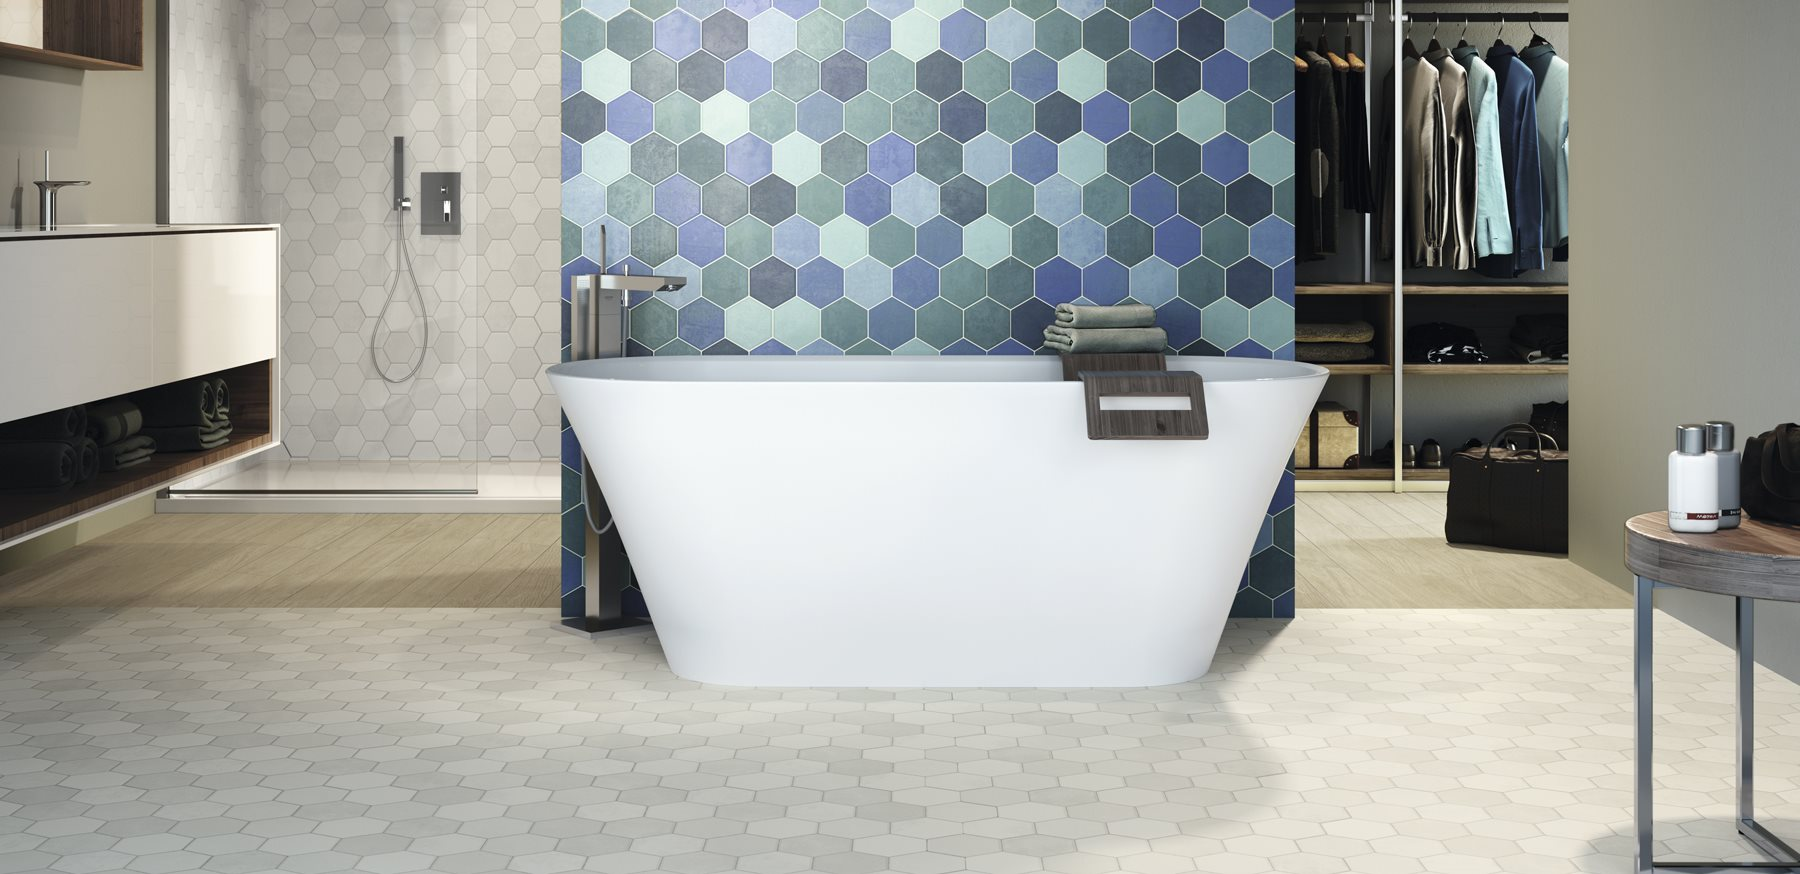 Carrelage uni blanc hexagonal dans une salle de bain moderne avec meubles en bois et détails bleus, éclairage doux, ambiance épurée